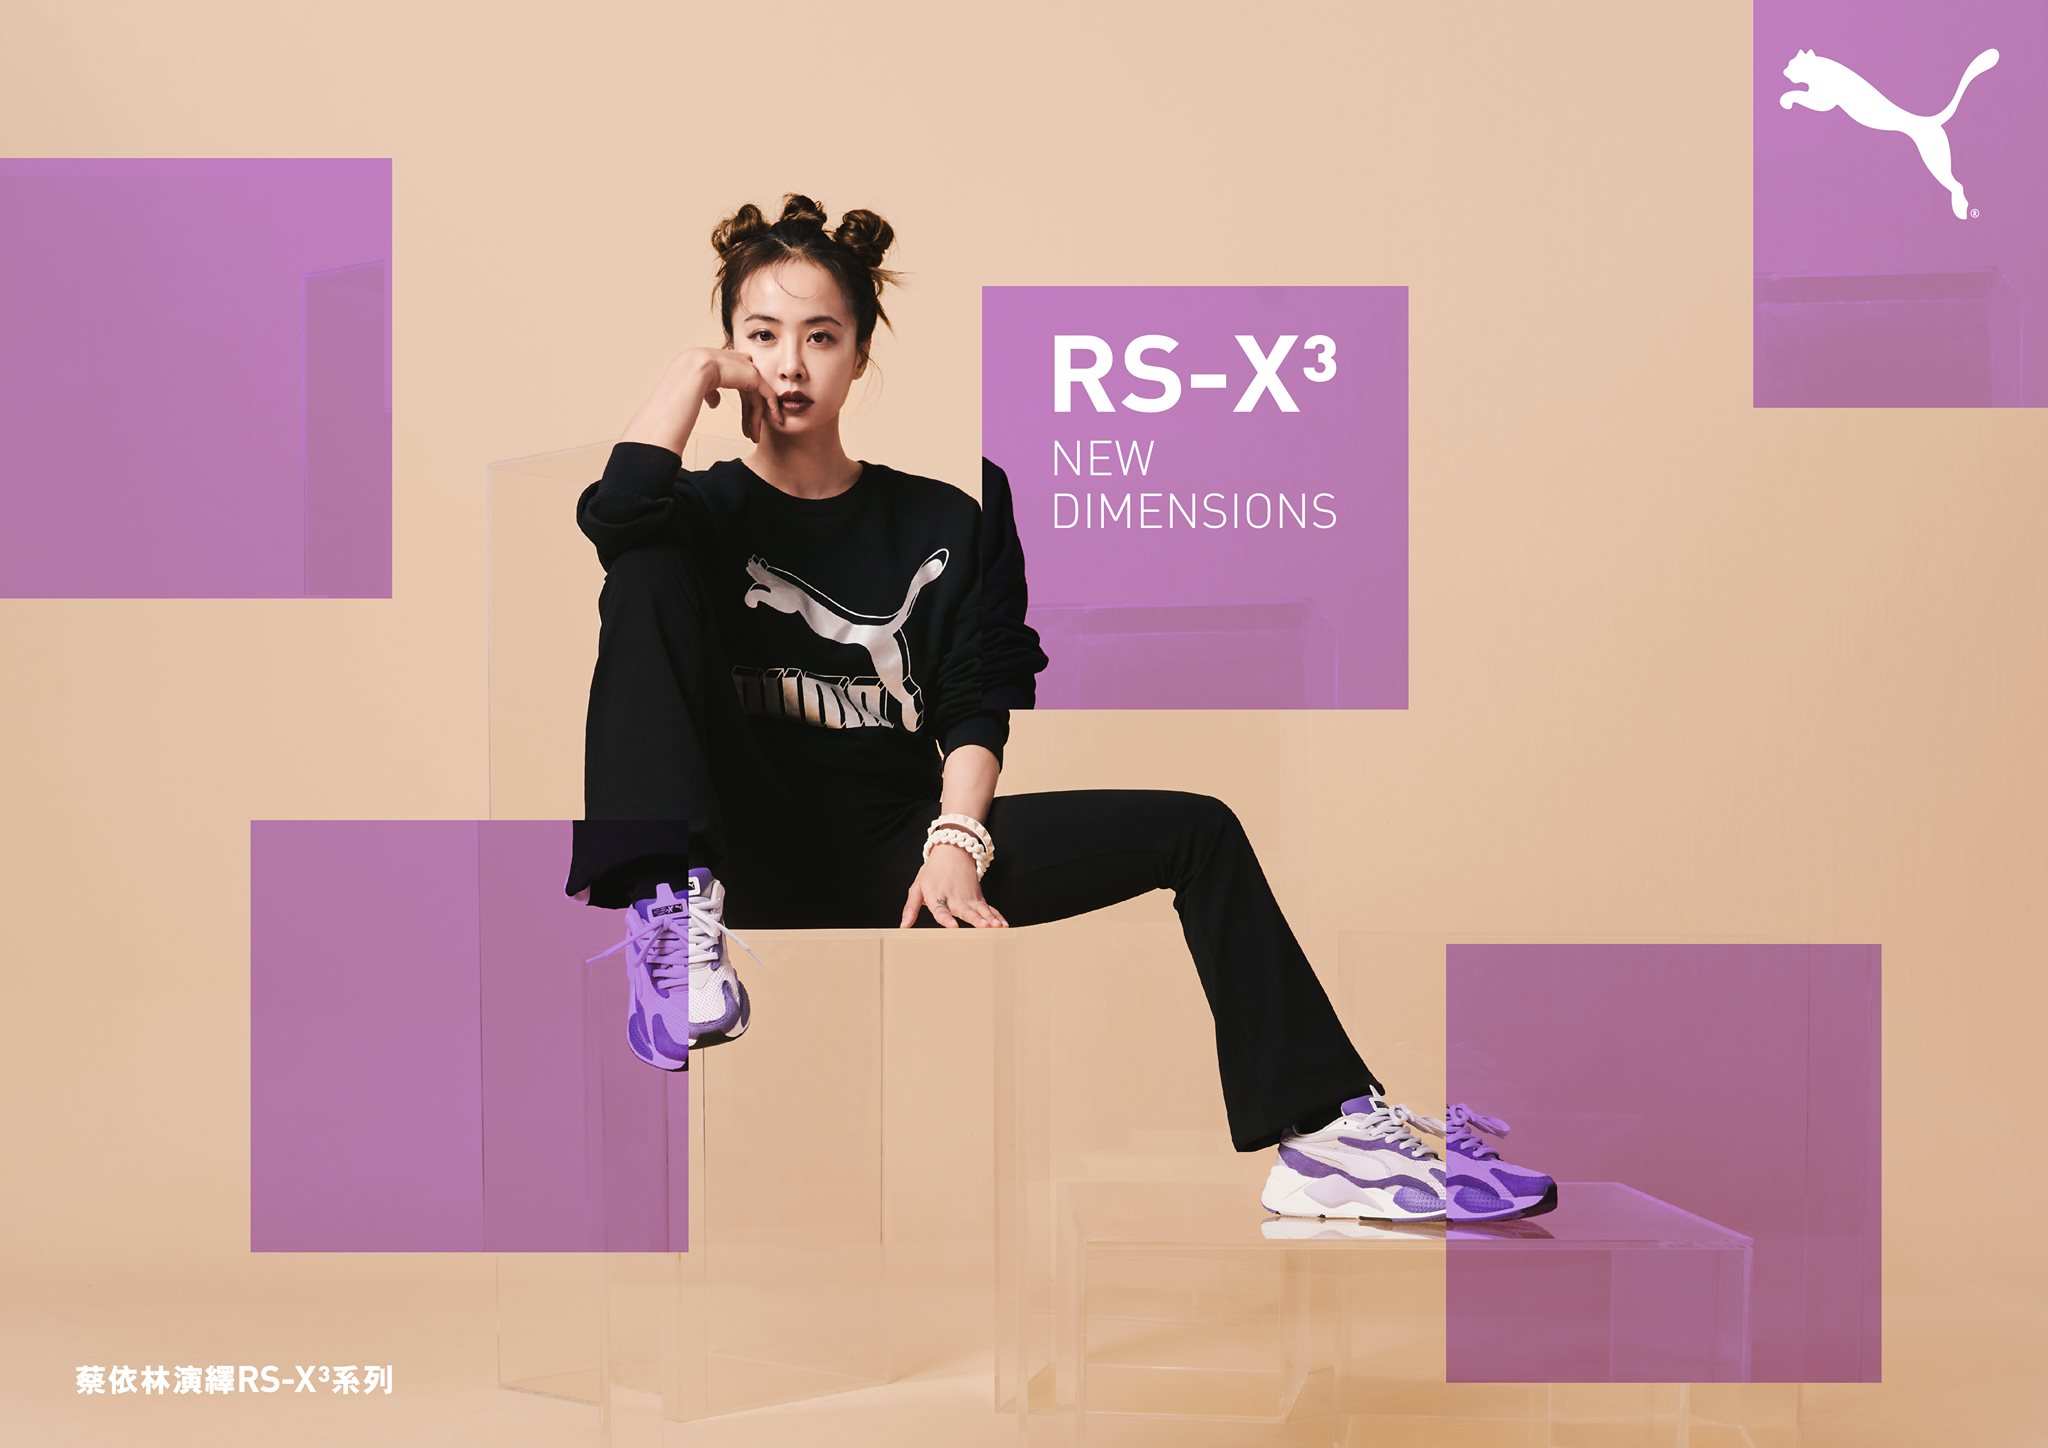 流行天后蔡依林 Jolin Tsai演繹嘅RS-X³ Super鞋款，係由PUMA專利嘅RS(Running System)系列重新打造而成，比前作更強調物料混合同選用鮮豔誇張嘅配色，你都快啲趁新年買對新鞋過年啦！